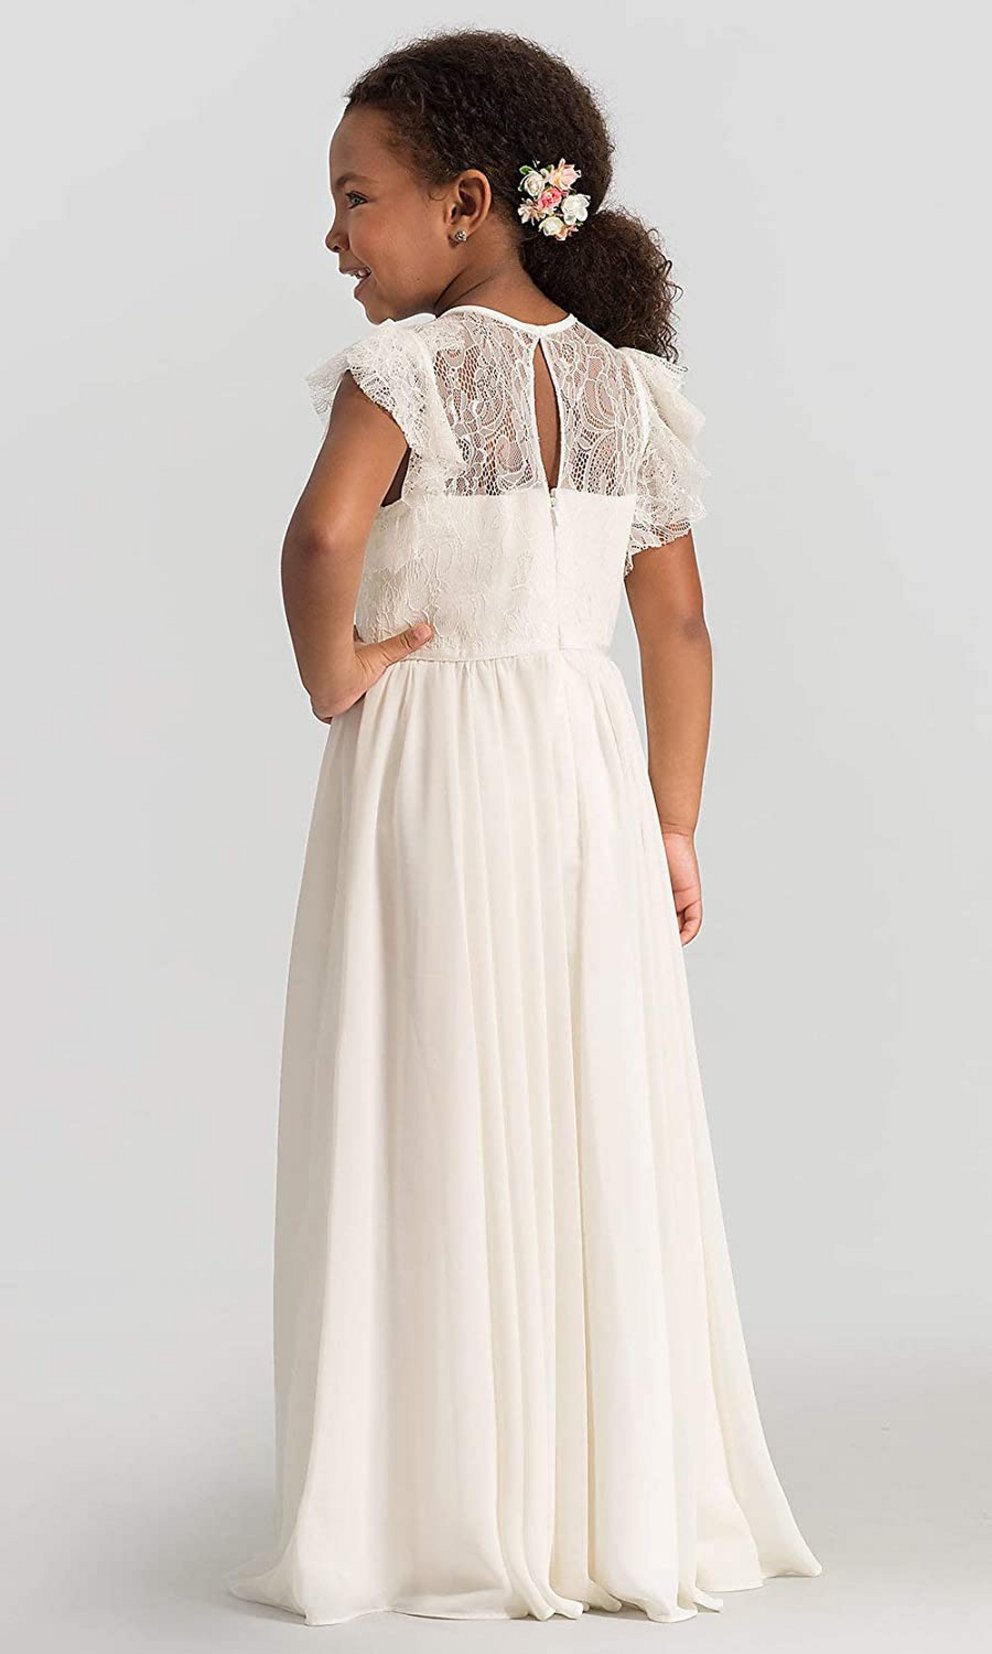 Kommunionkleider: Schönes schlichtes Kleid in weiß